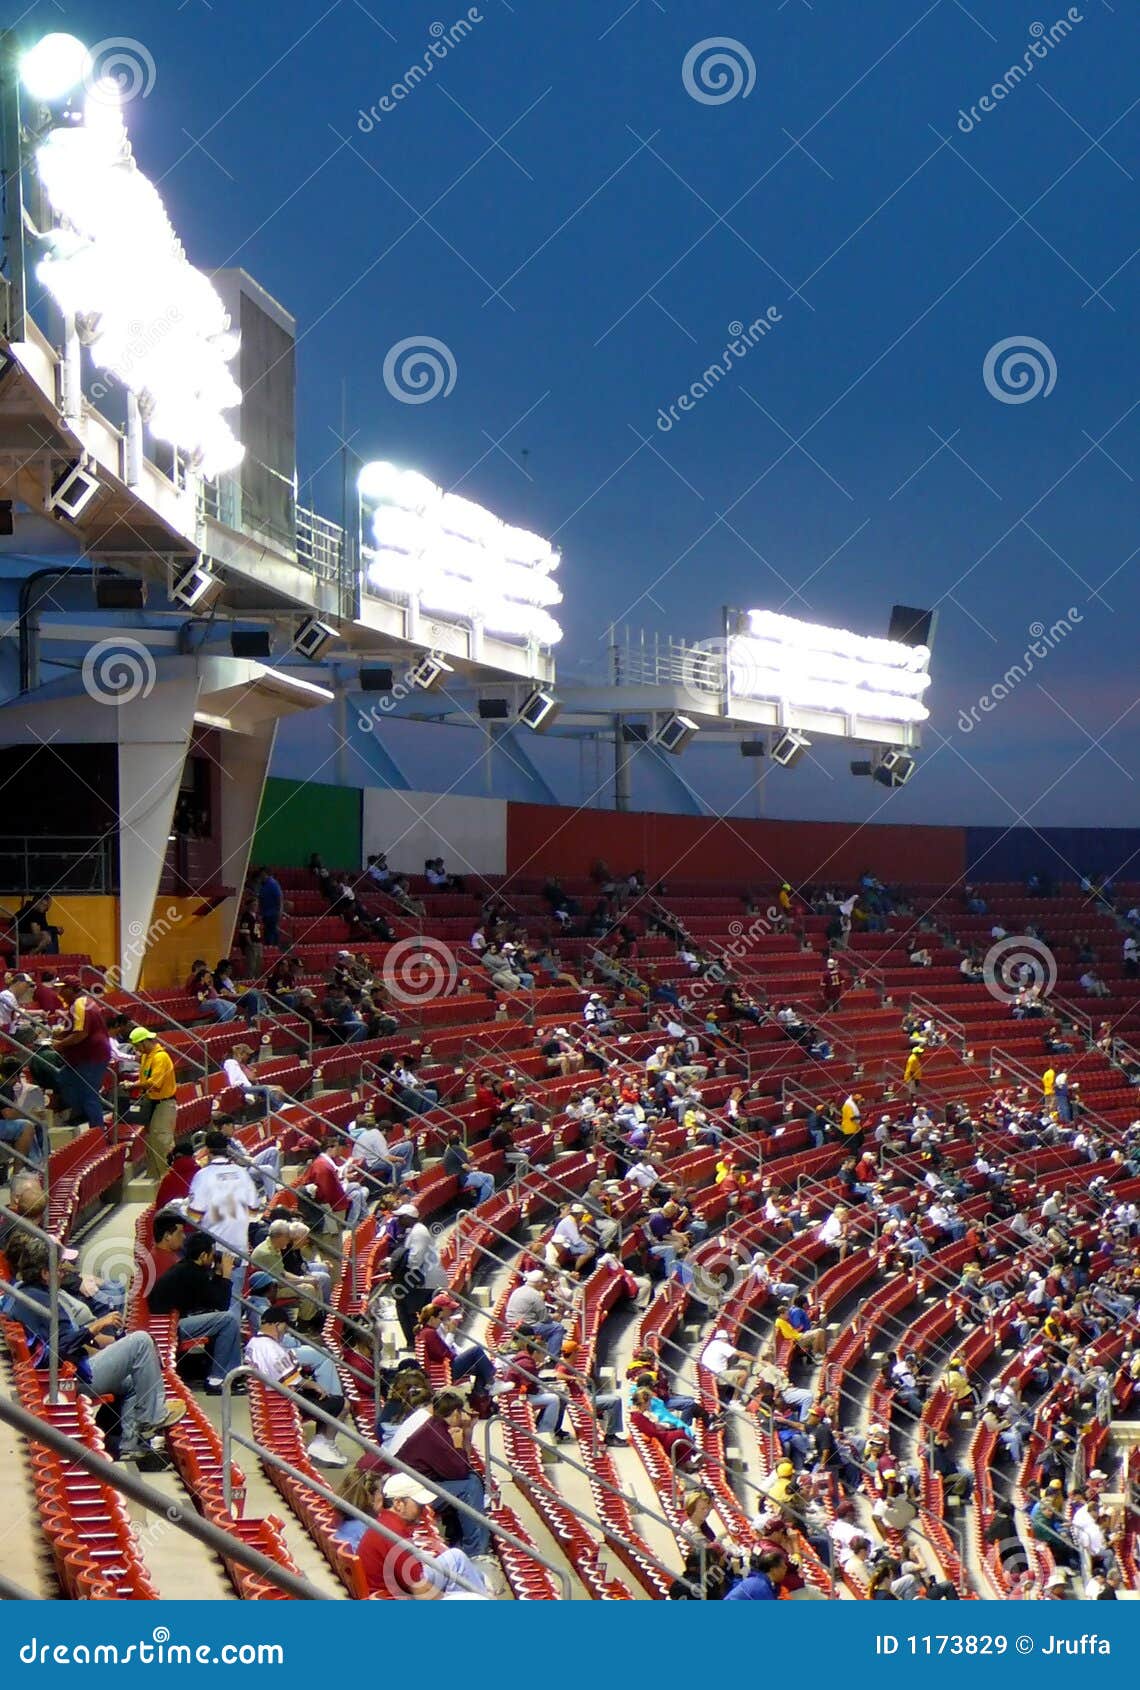 stadium seating at night game